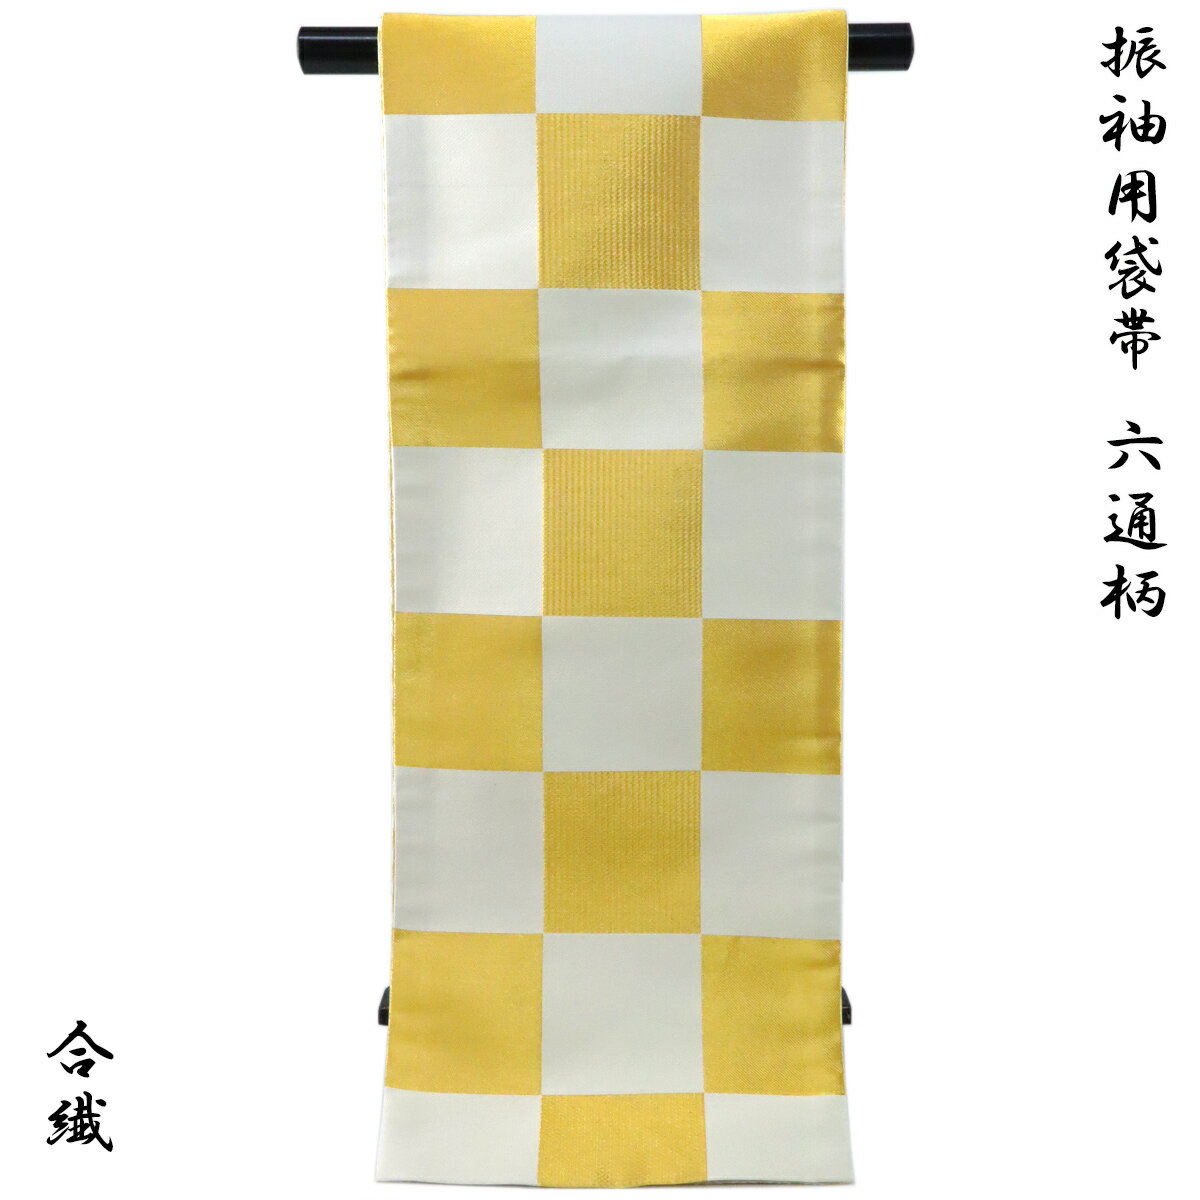 袋帯 振袖用 -21- 両面袋帯 長尺 ポリエステル100 日本製 金/白練 市松柄